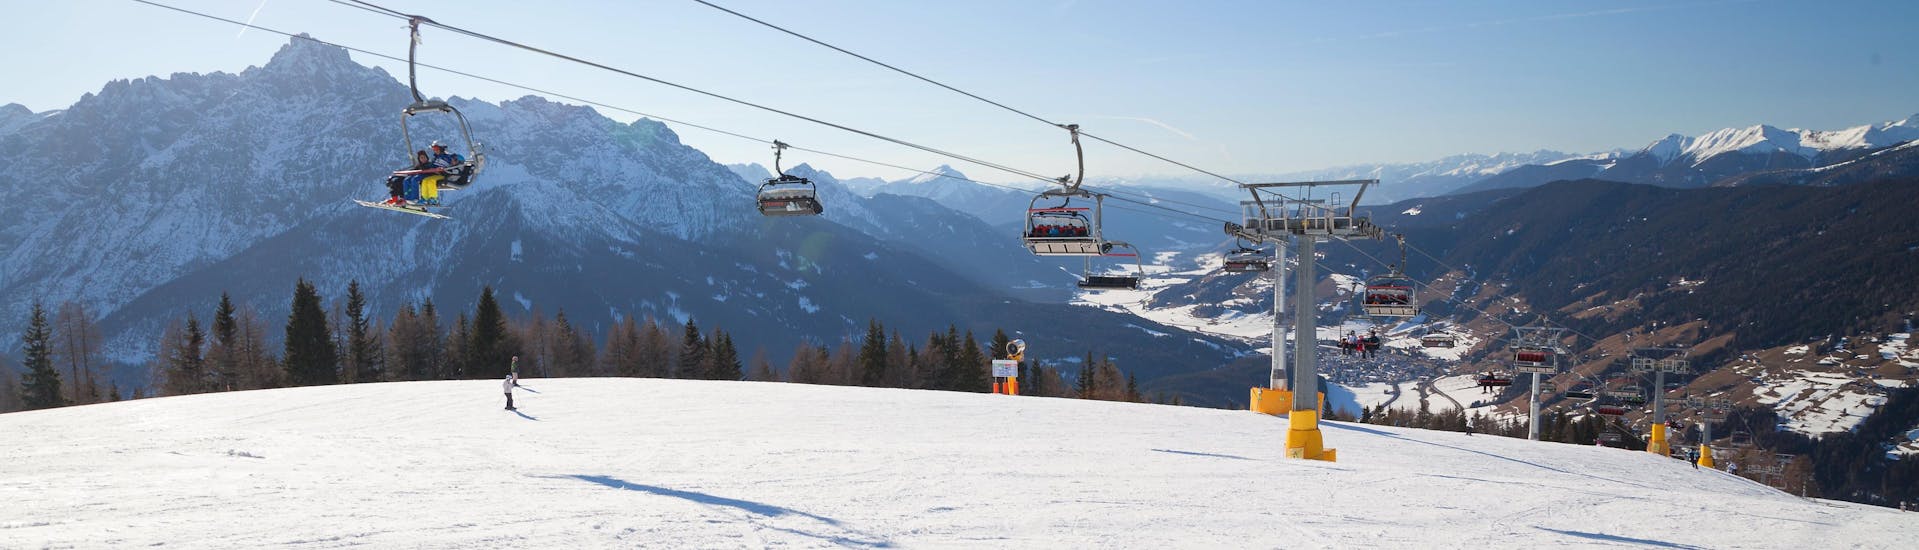 Téléski sur les pentes de San Vito di Cadore où vous pouvez prendre des leçons de ski.